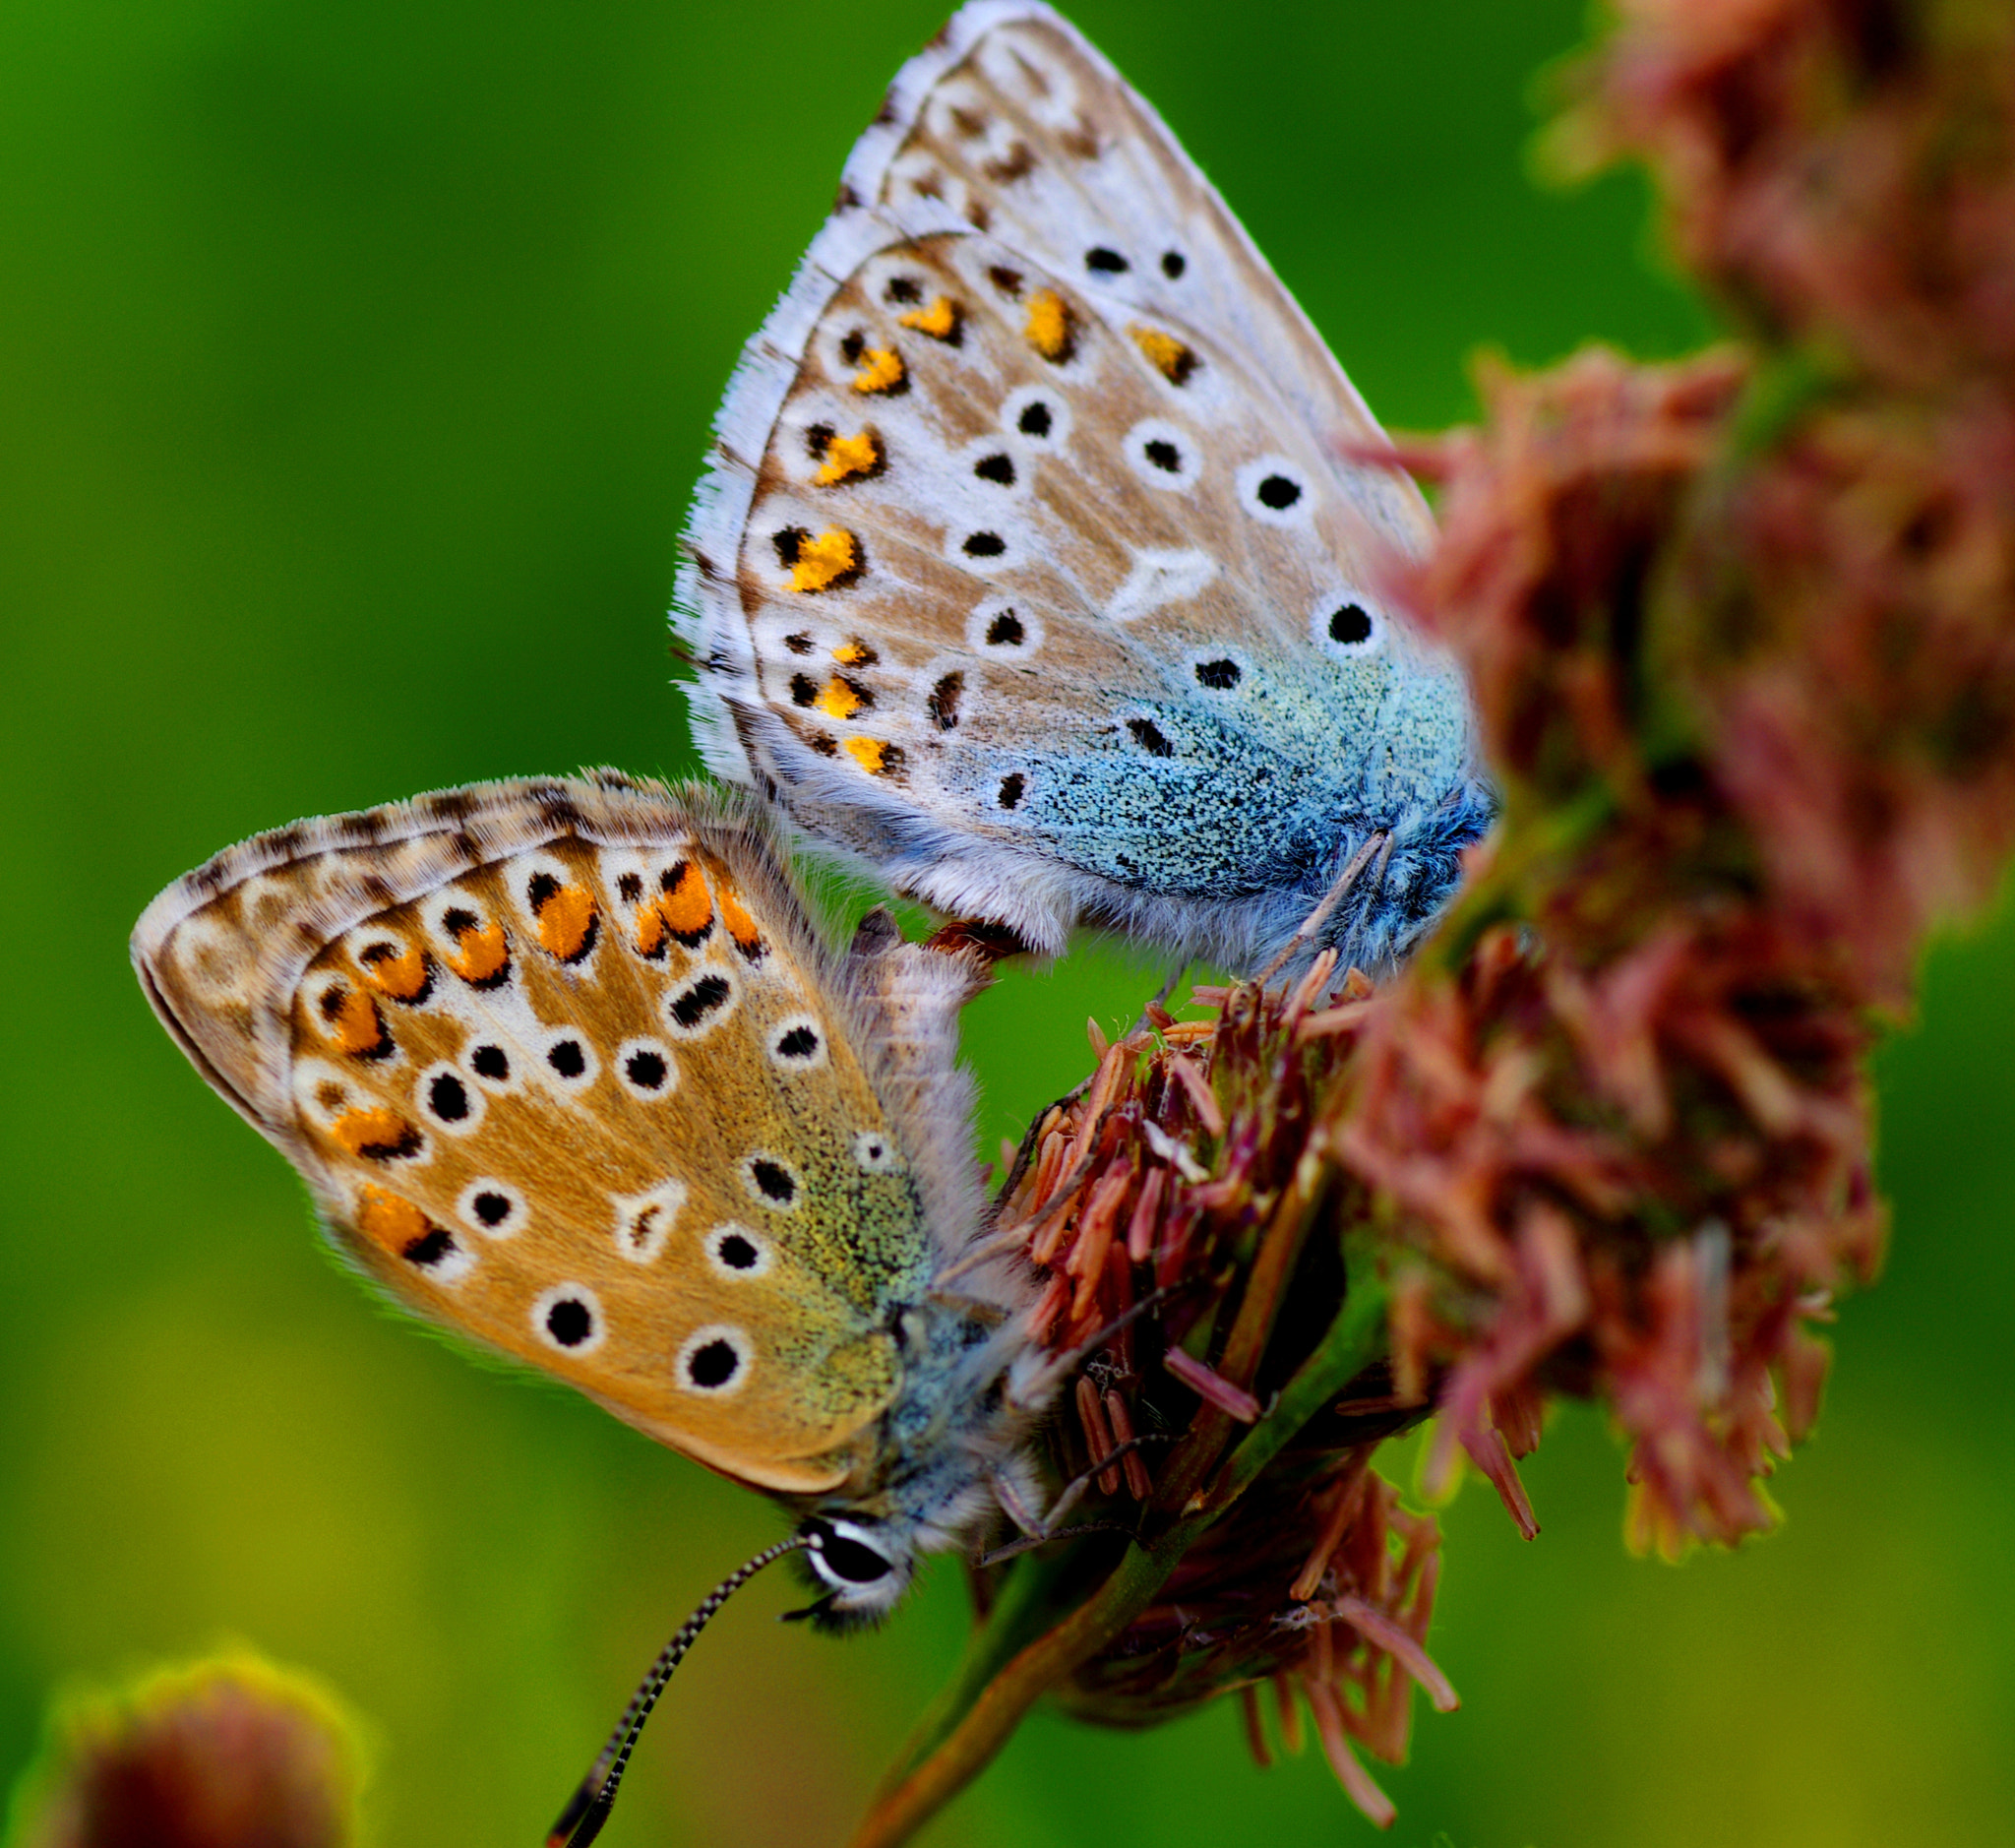 Pentax K-5 sample photo. Butterflies photography